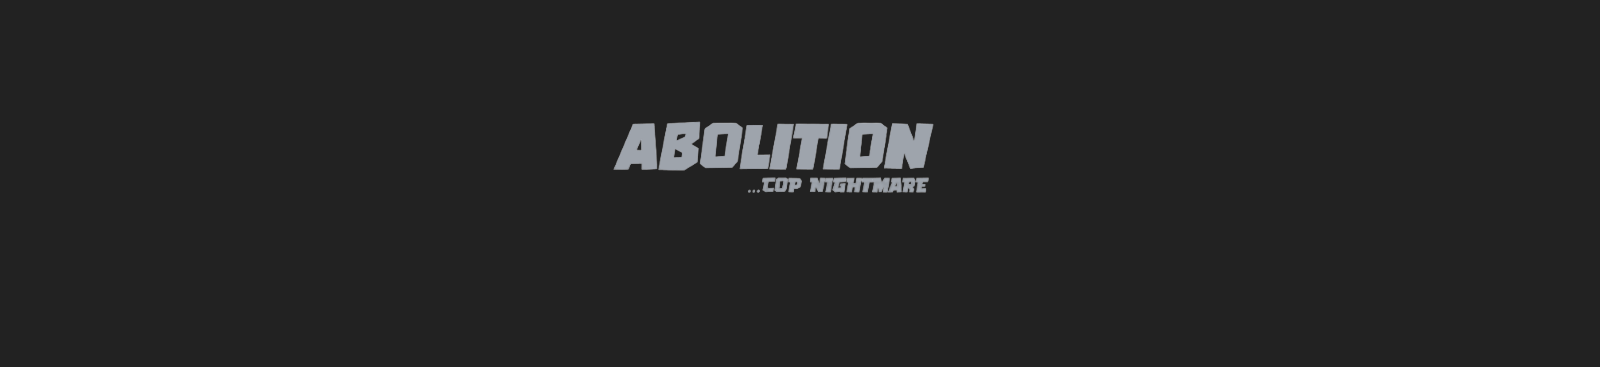 Abolition [Cop Nightmare]